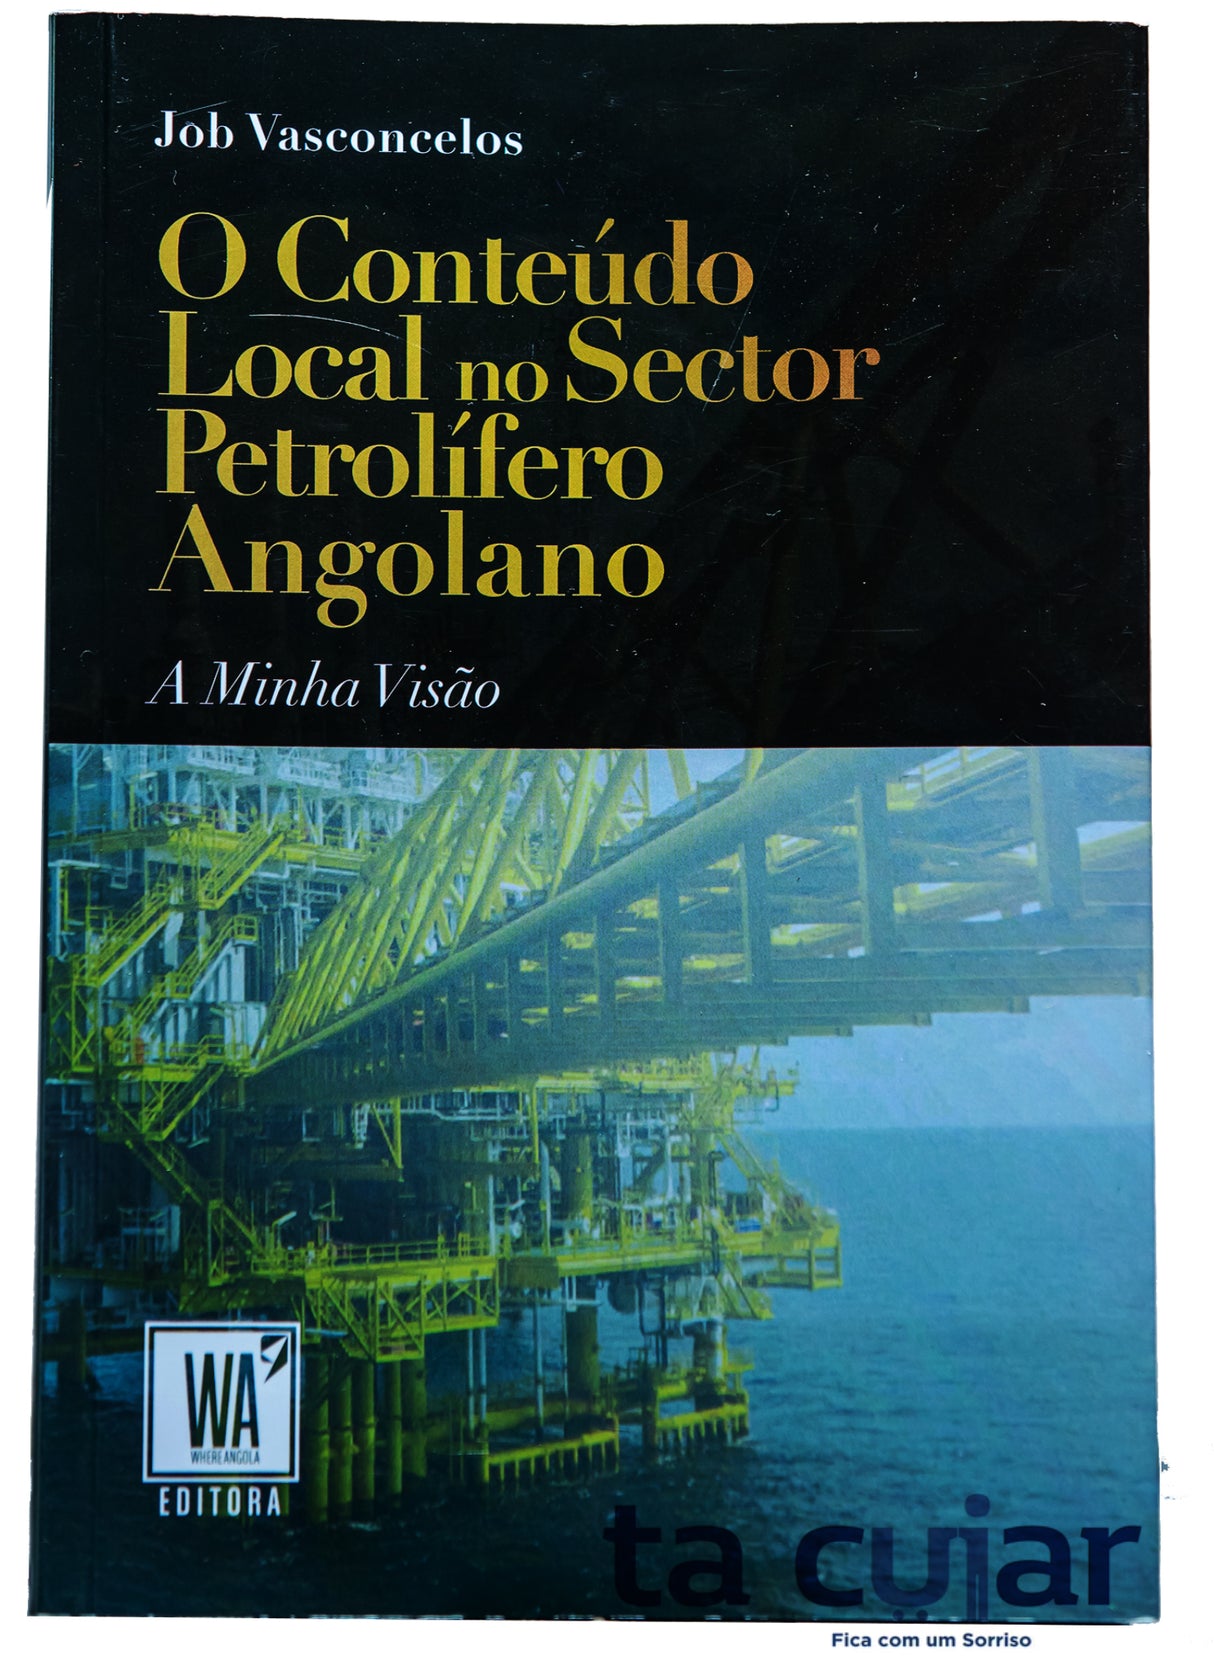 O Conteúdo Local no Sector Petrolífero Angolano